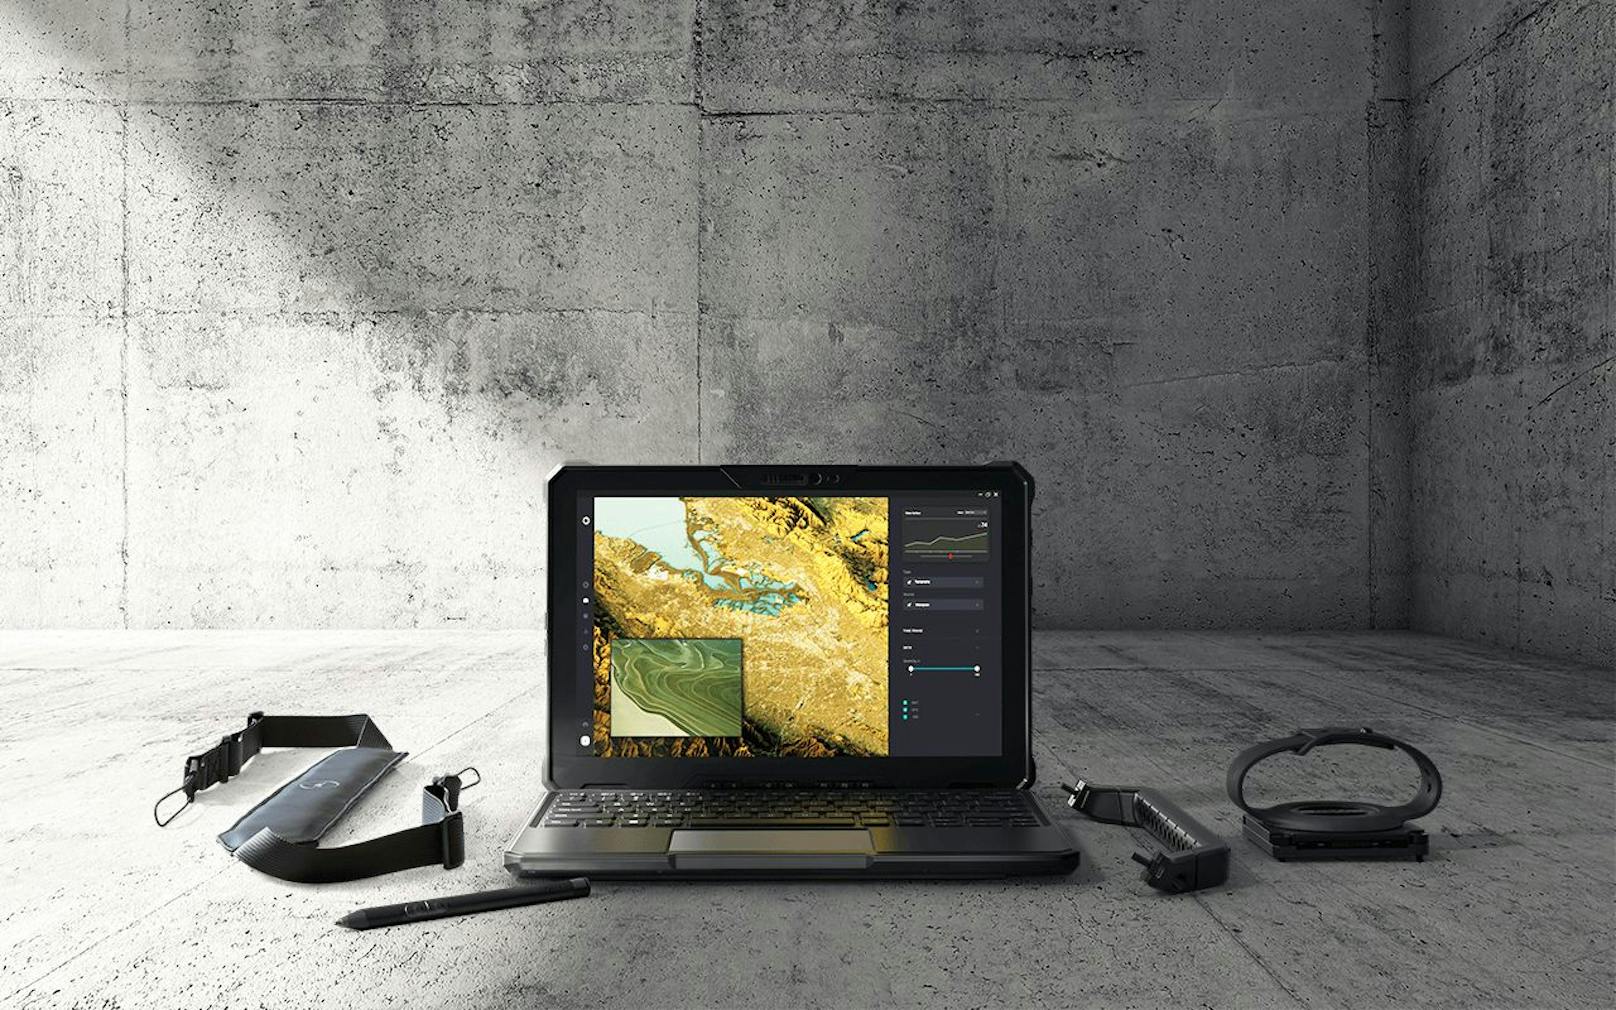 Neues Rugged-Tablet von Dell Technologies "vereint Robustheit, Spitzenleistung und Sicherheit".